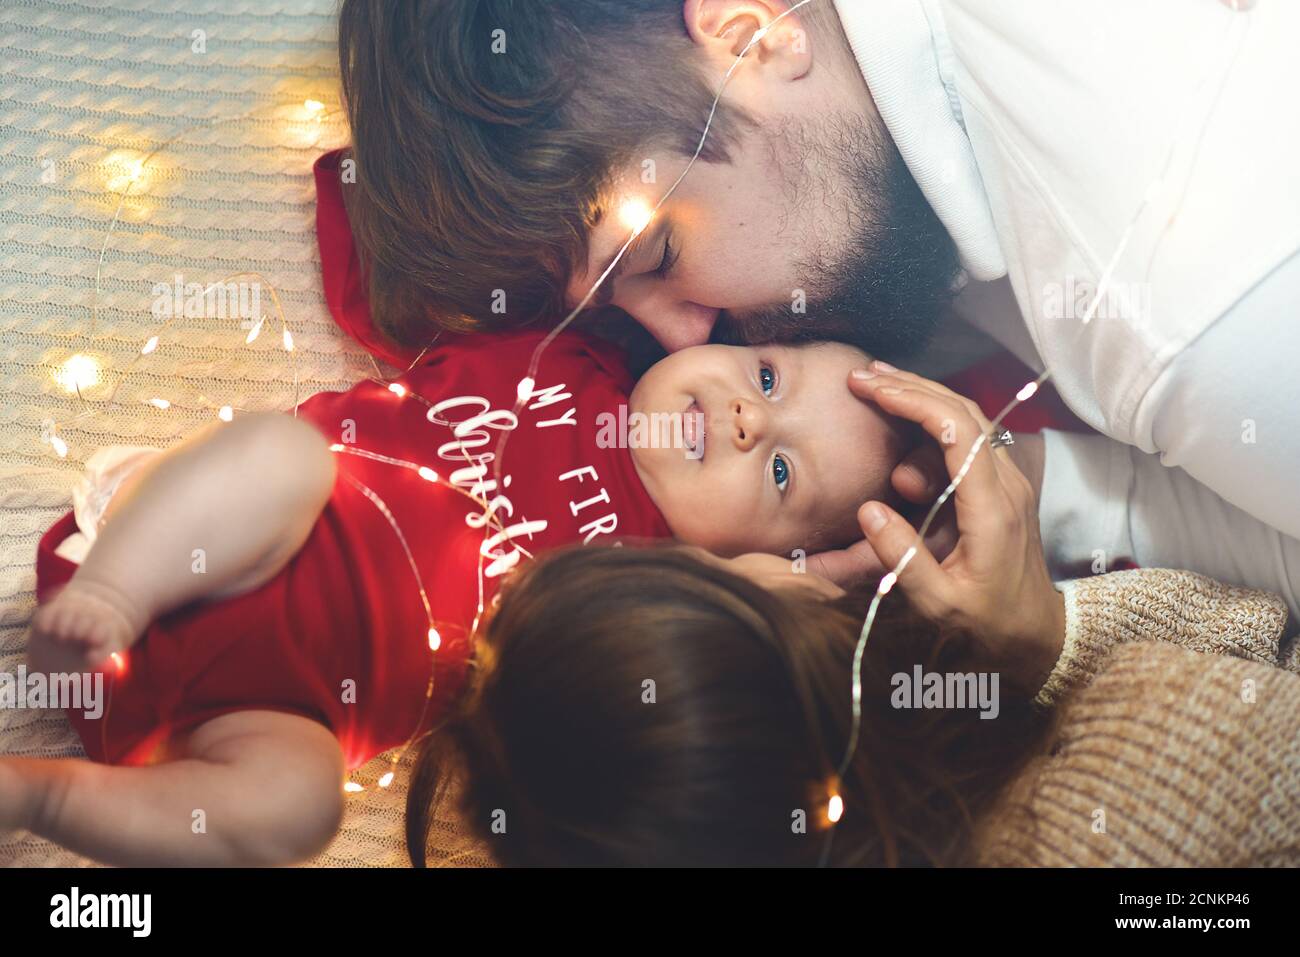 Familie, Liebe, Glück Konzepte.Eltern küssen die Wange des Babys. Frohe Familie. Stockfoto